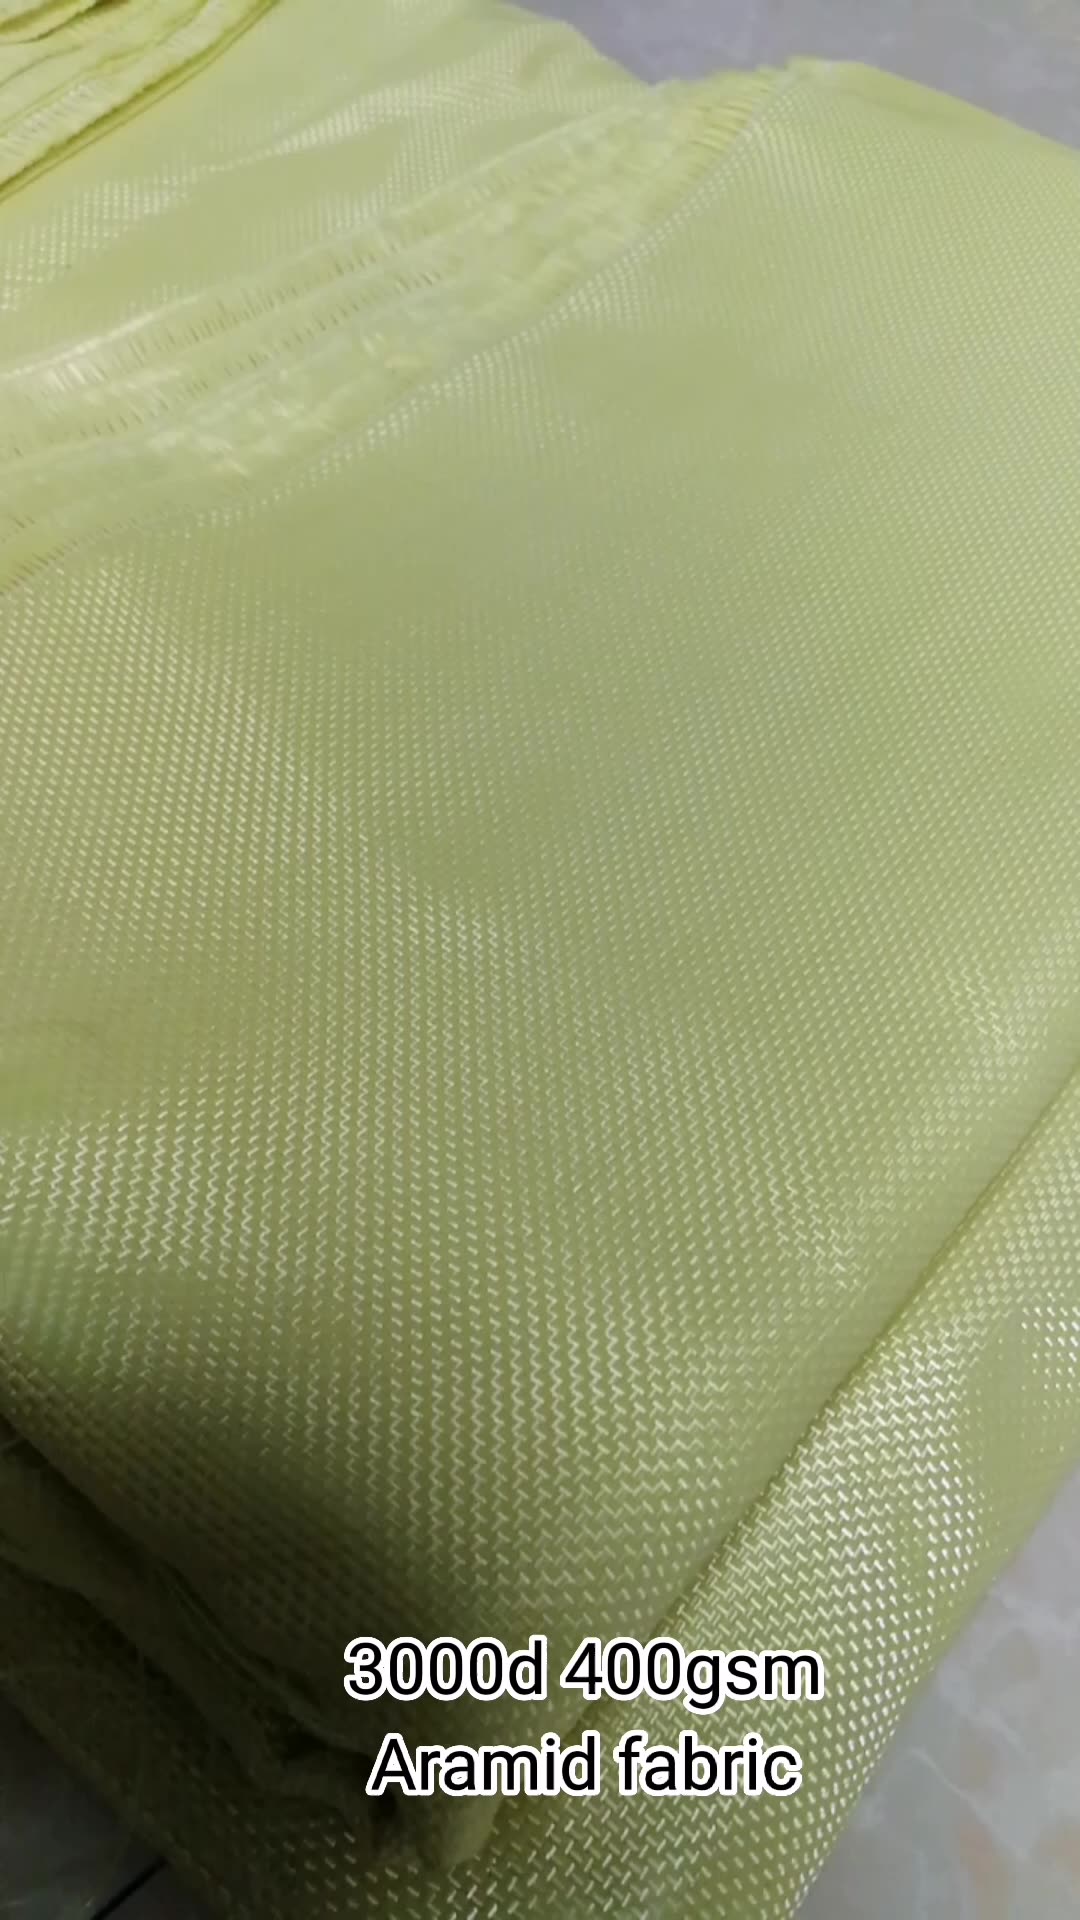 Tecido de tecido para-aramid de alta resistência